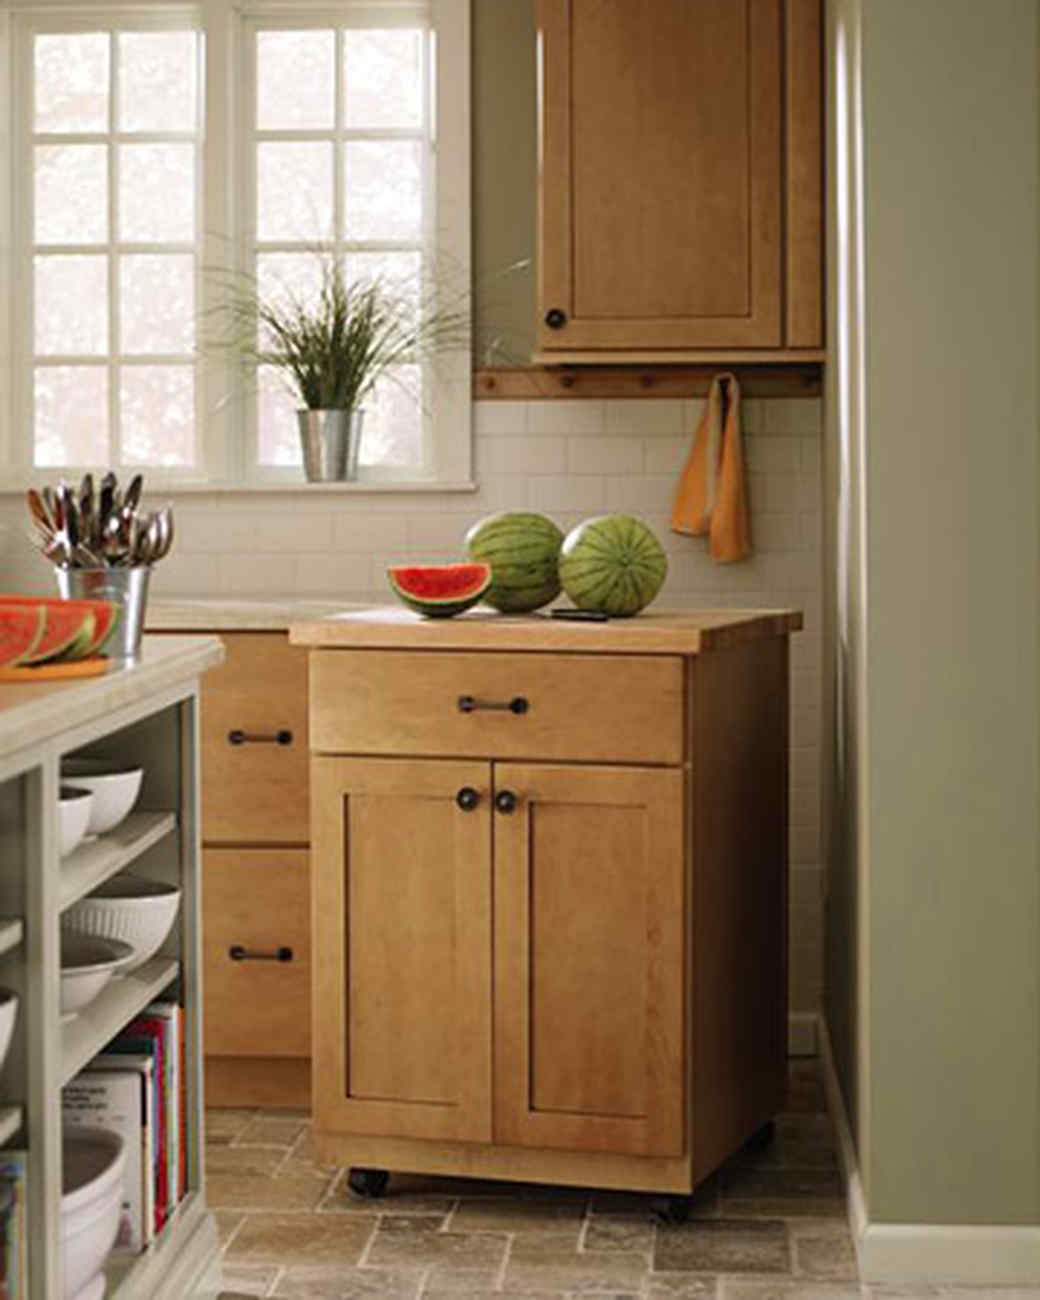 Martha Stewart Living Kitchen Designs from The Home Depot | Martha Stewart